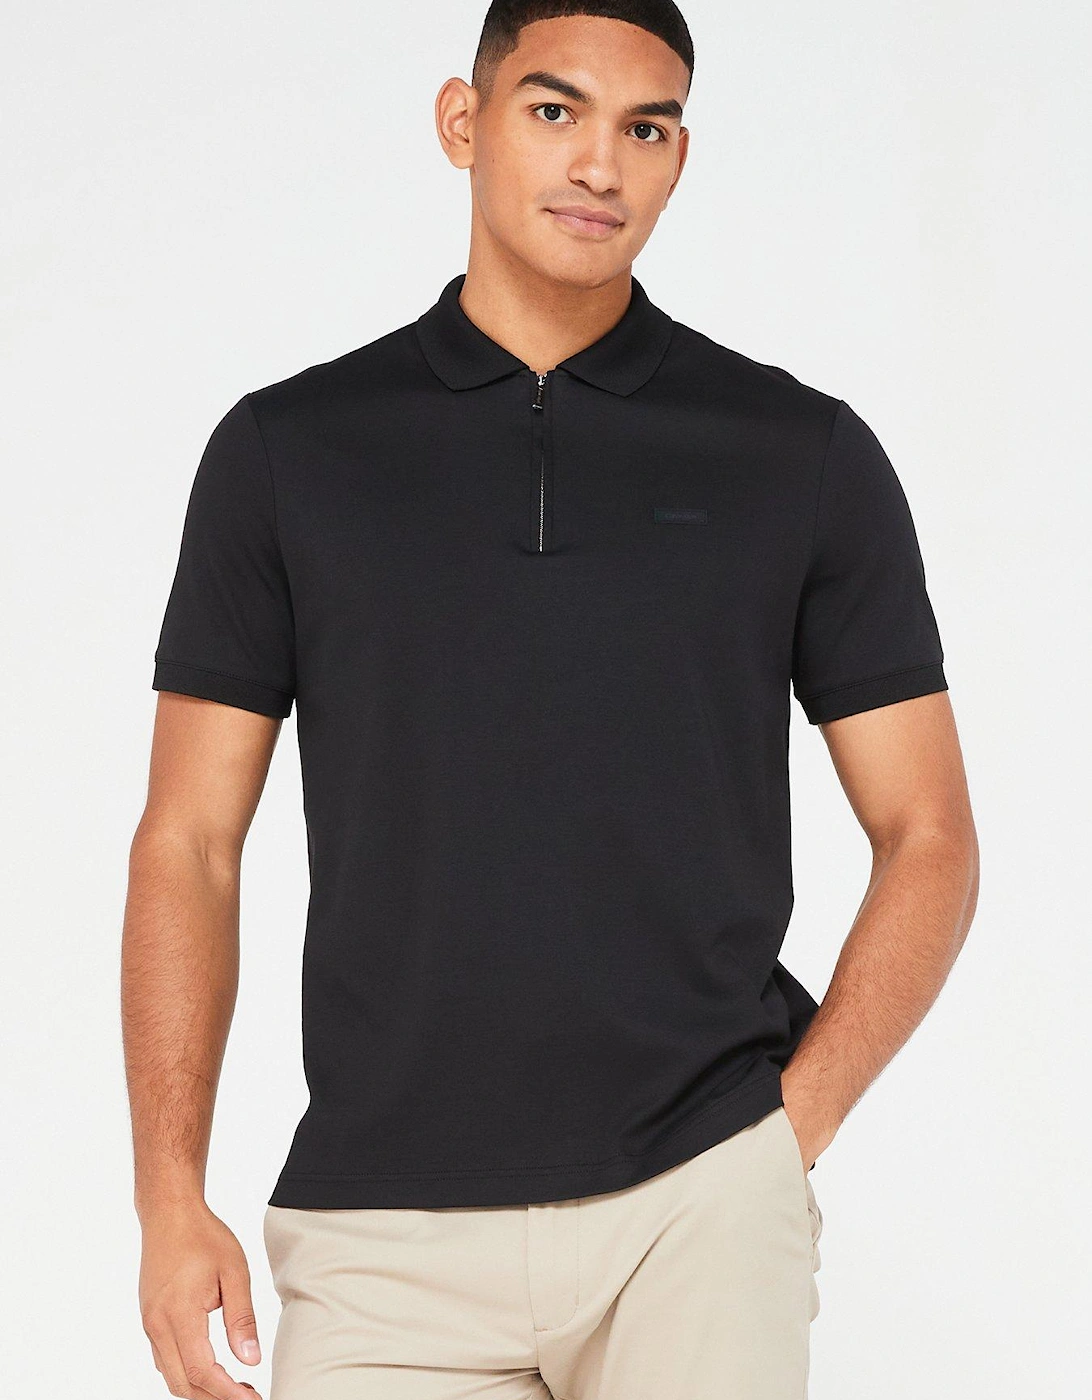 Smooth Cotton Zip Neck Polo Shirt - Black, 2 of 1